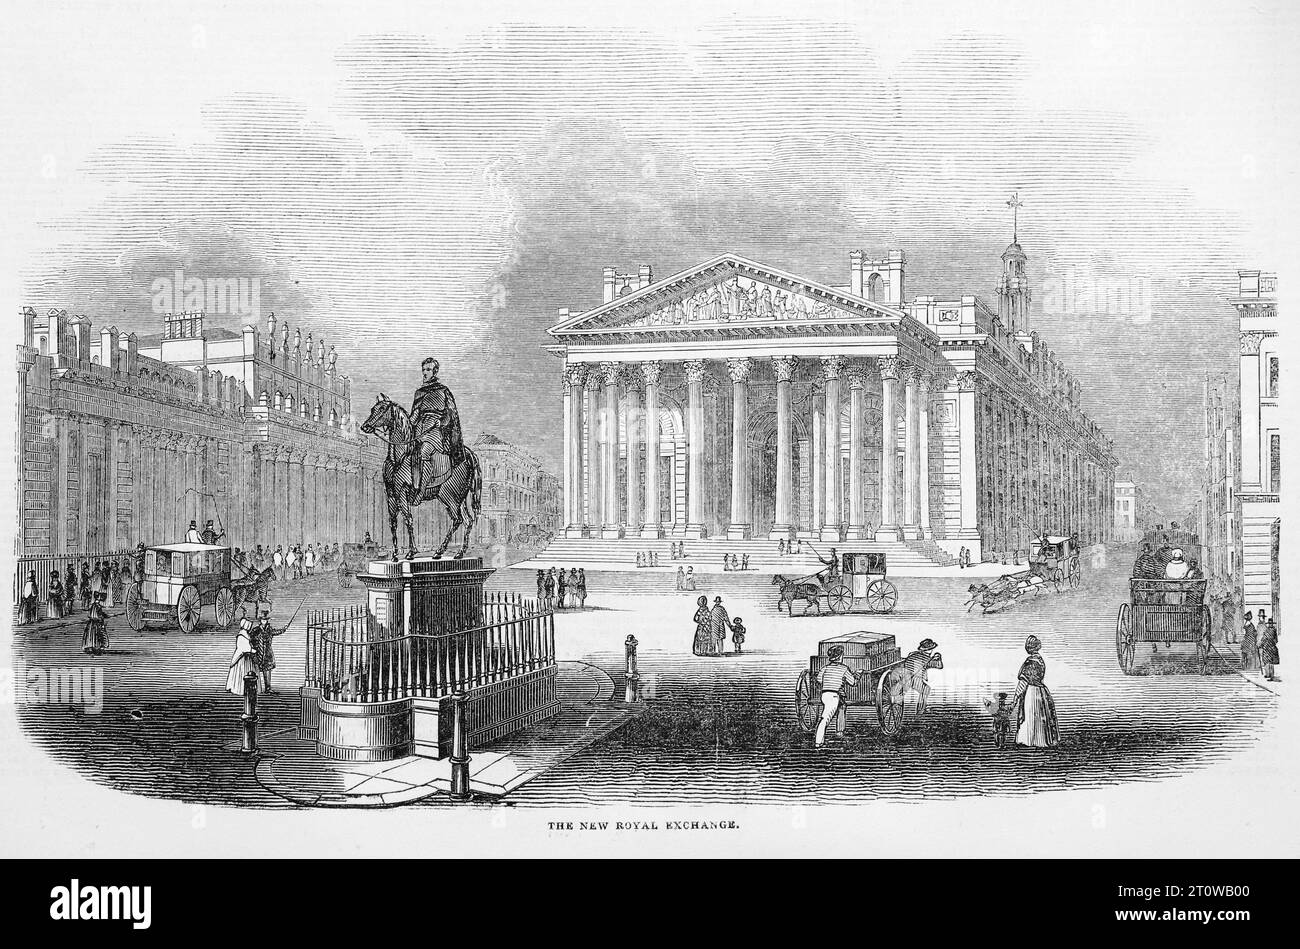 Le New Royal Exchange Building, City of London. Construit en 1844 selon les plans de Sir William Tite. Illustration en noir et blanc du London Illustrated News ; 1844. Banque D'Images